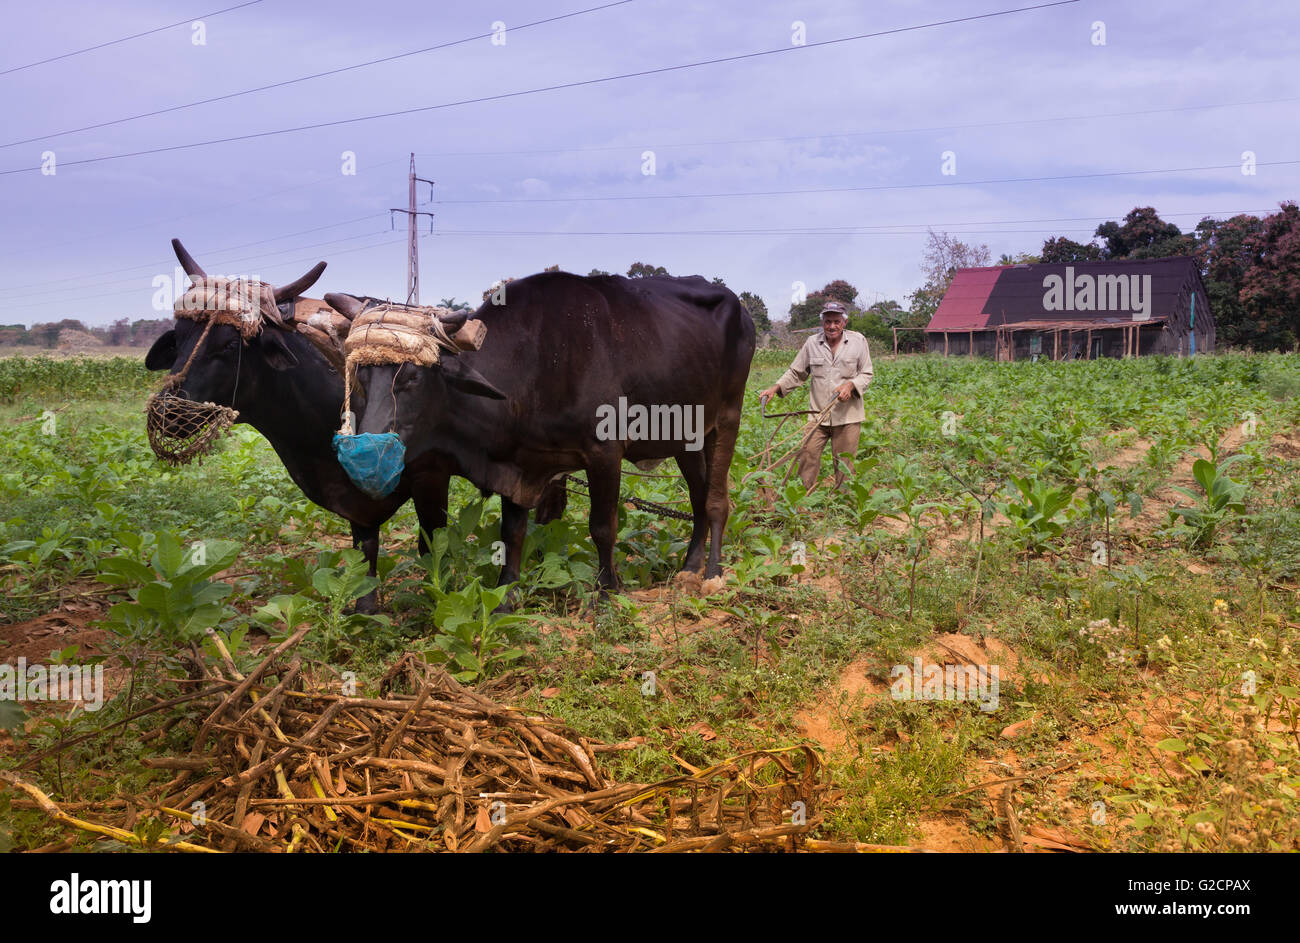 Tobacco farmer with oxen, Pinar del Rio, Cuba Stock Photo